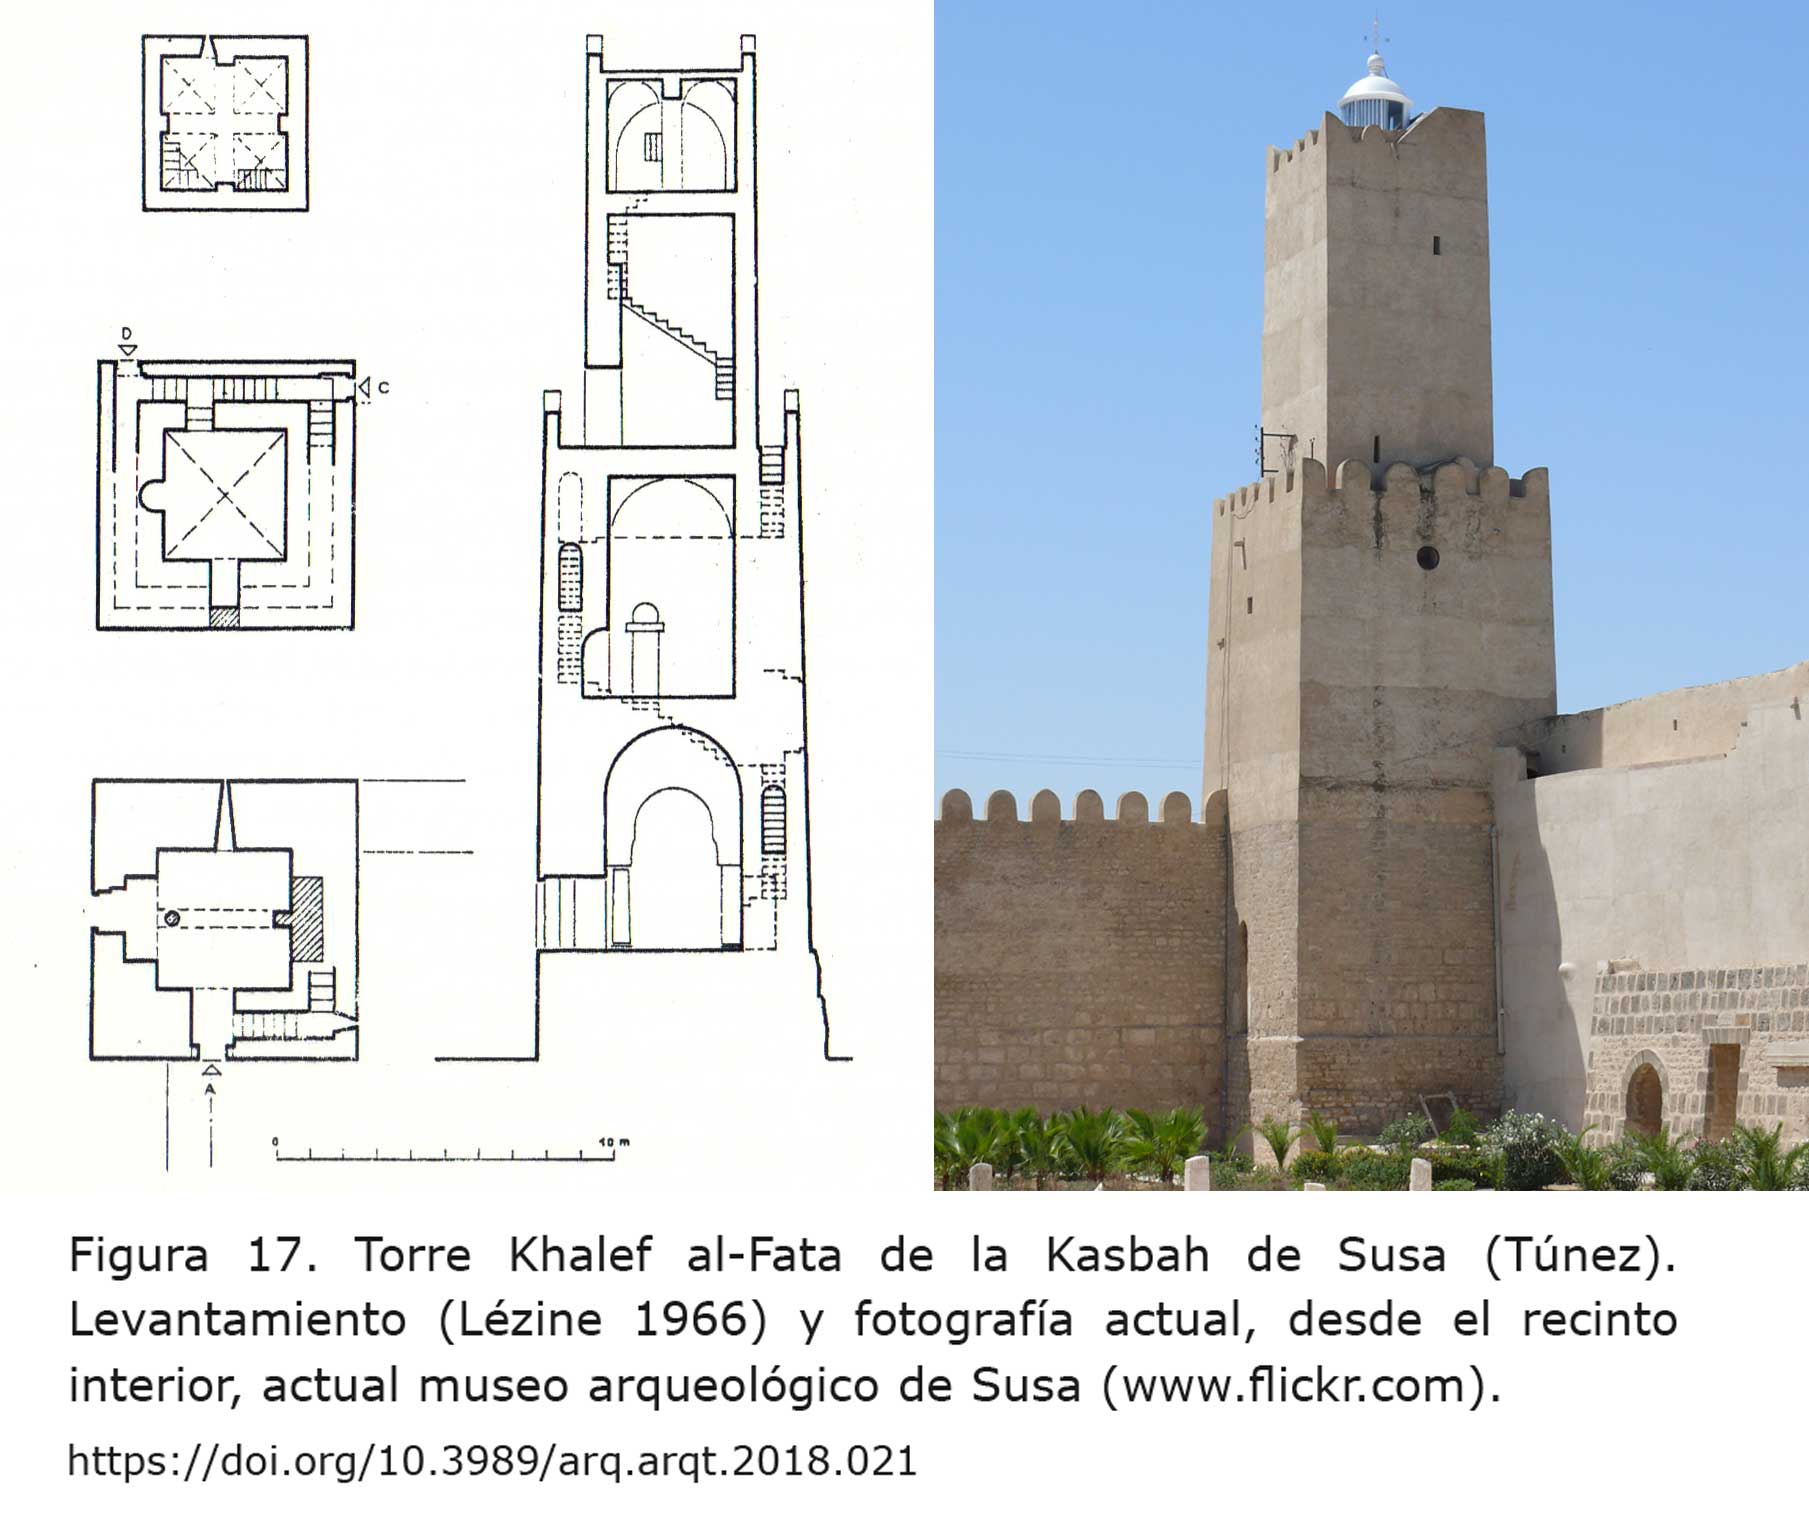 Torre Khalef al-Fata de la Kasbah de Susa (Túnez)